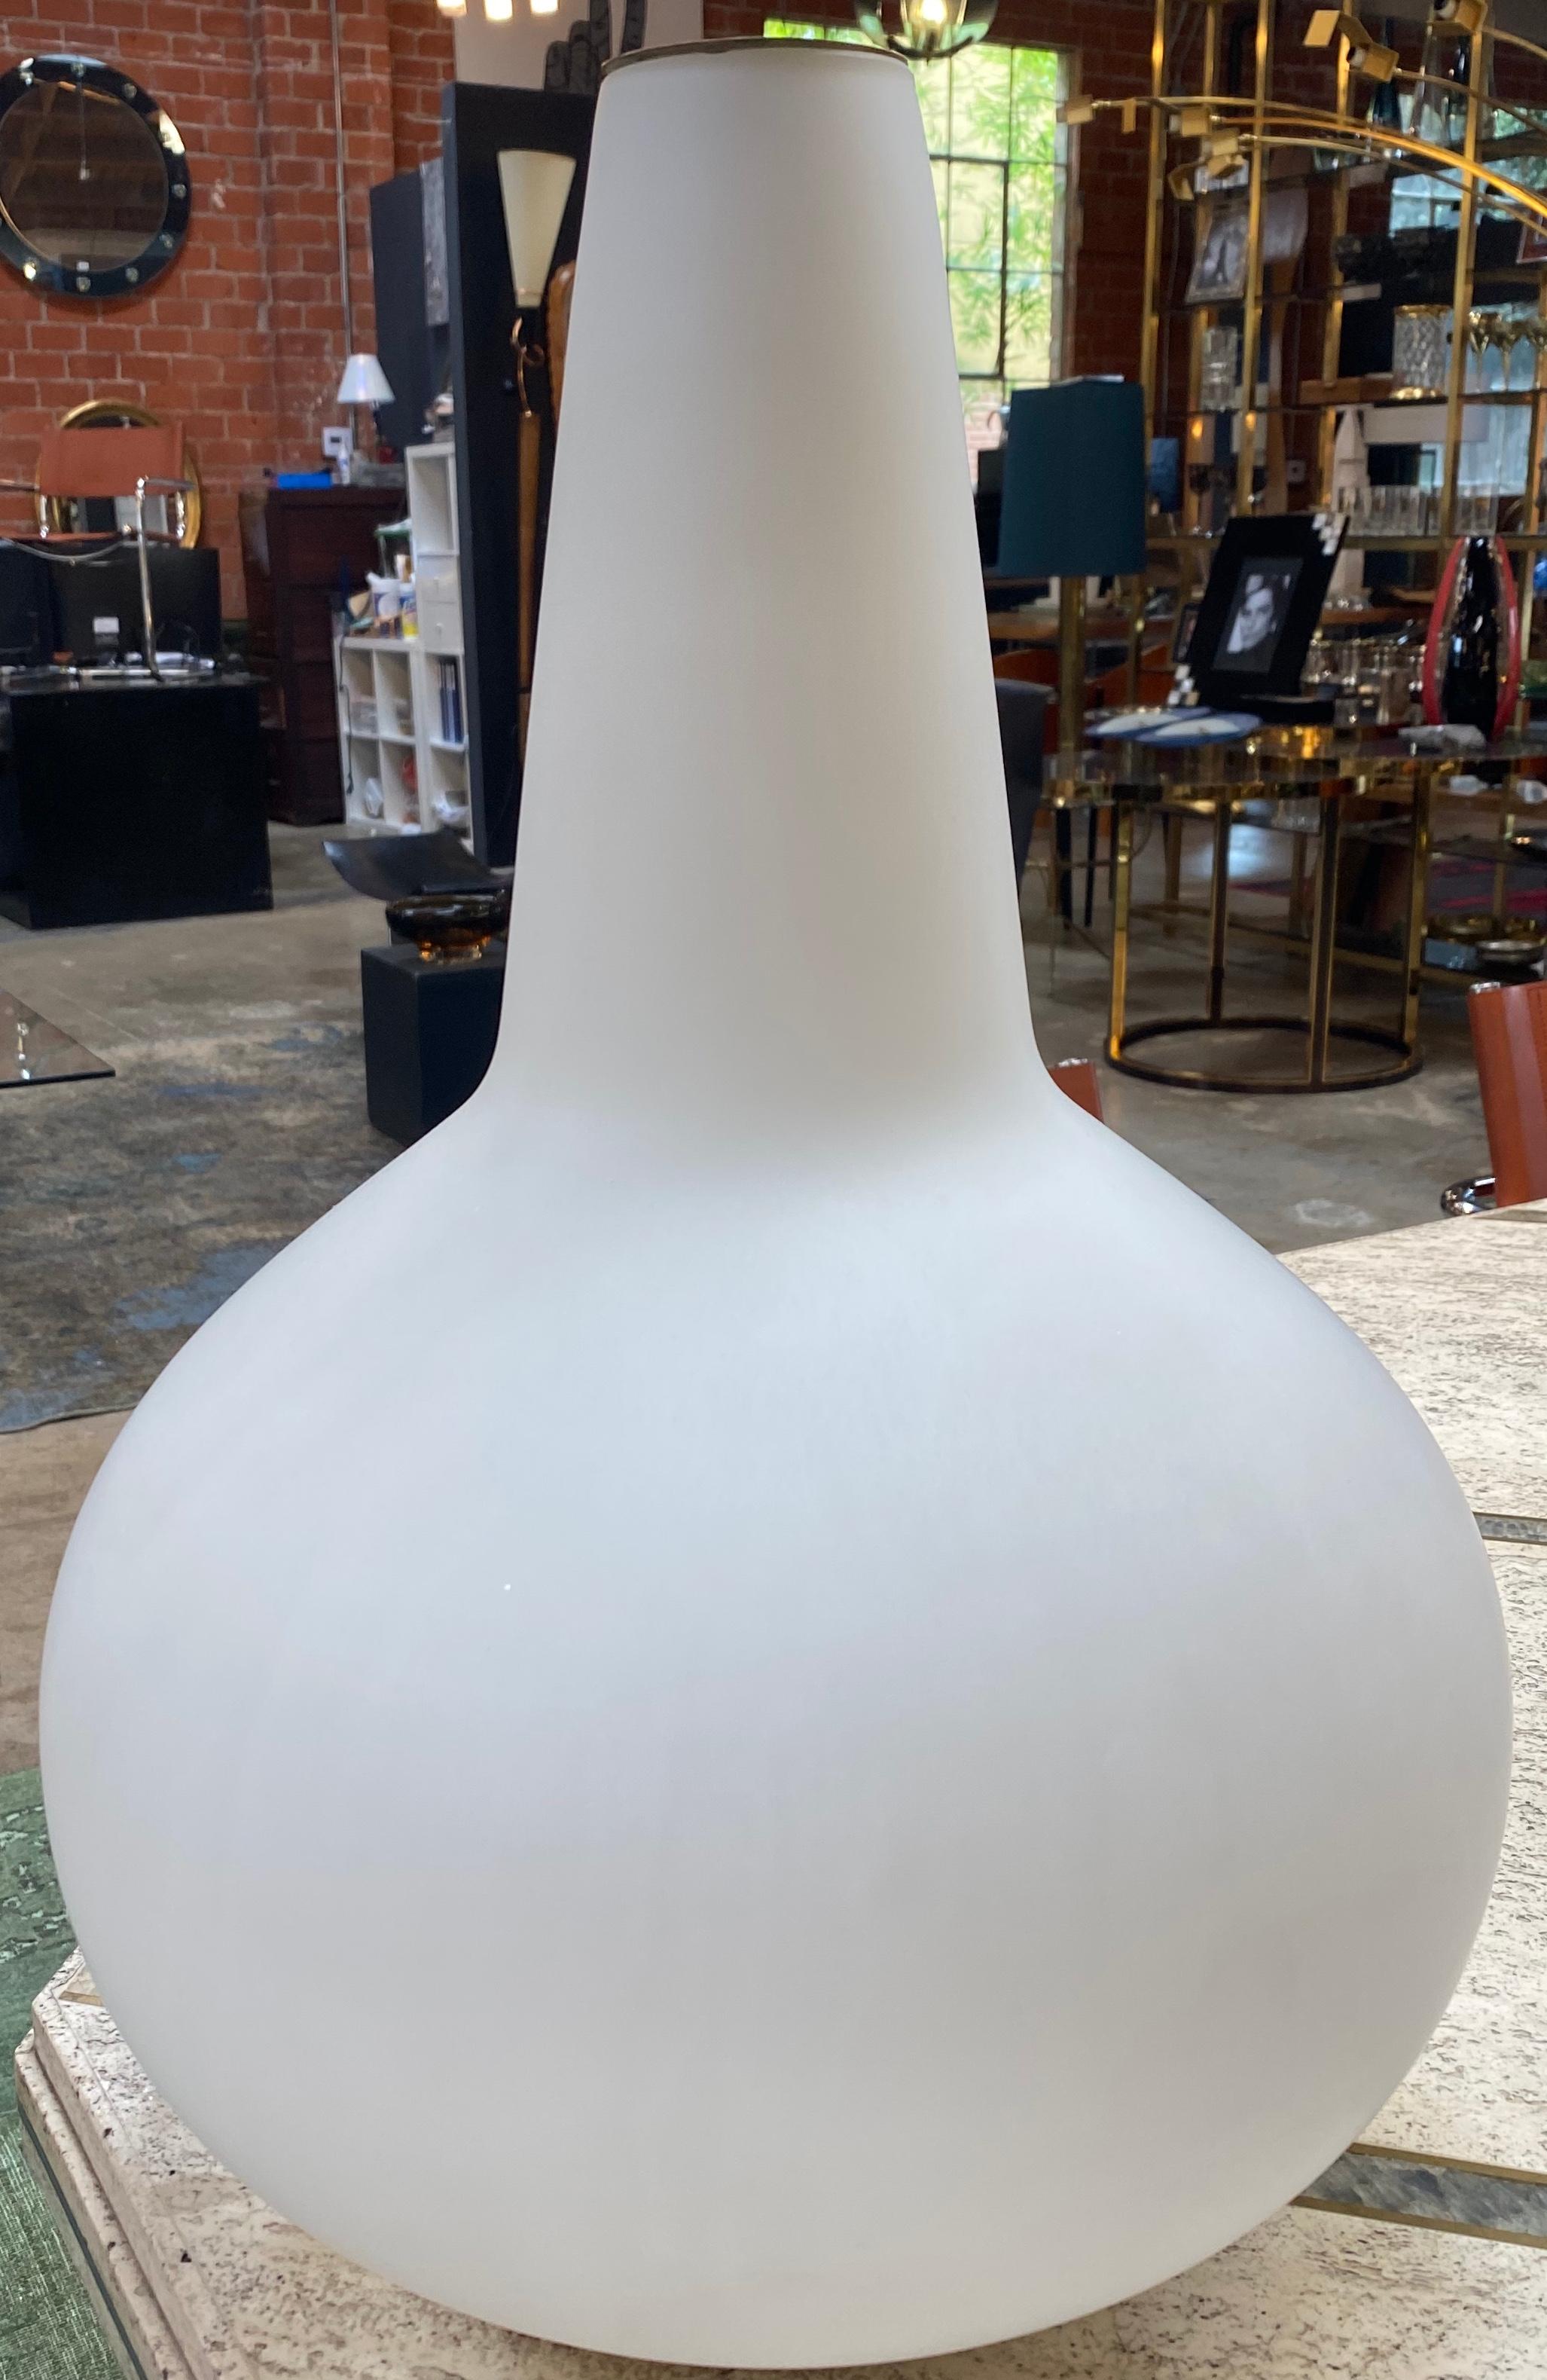 Projet Max Ingrand, 1954, pour Fontana Arte, Italie, verre satiné blanc, petit sceau en laiton dans le vase, base en métal, laqué blanc.
Connue pour ses luminaires vintage élégants et innovants, l'entreprise milanaise Fontana Arte a été l'un des